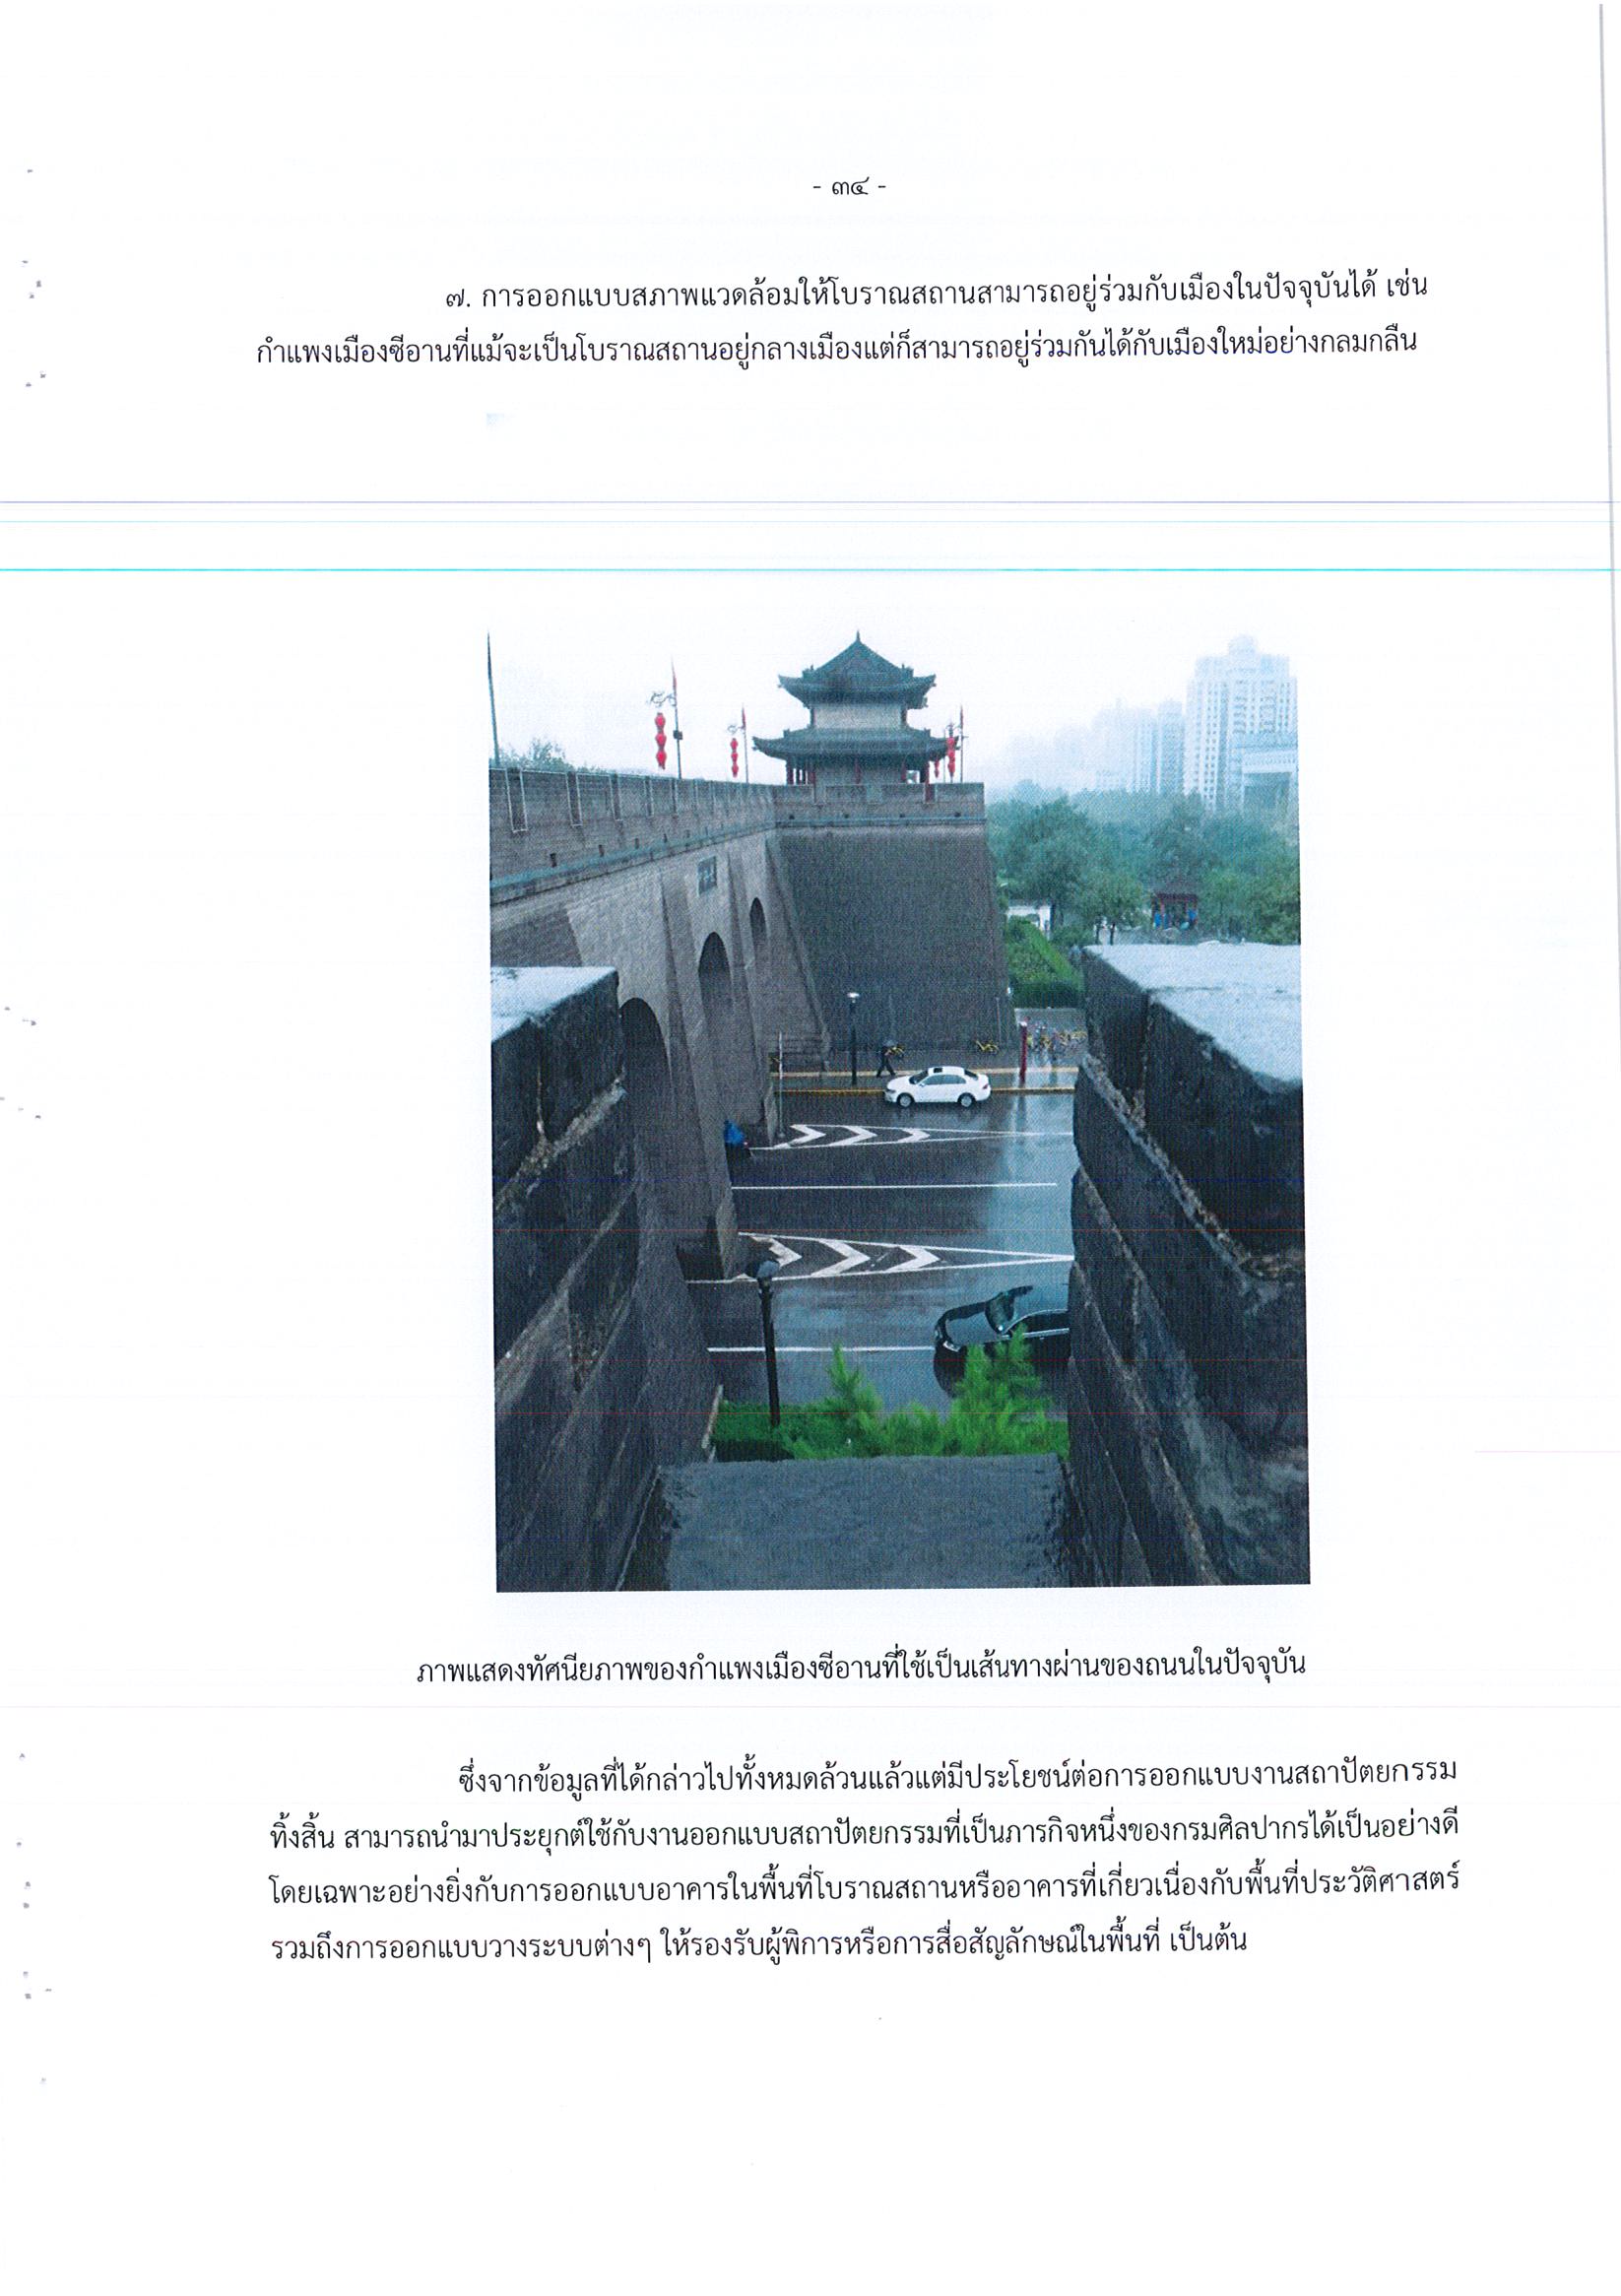 รายงานการเดินทางไปราชการ ณ สาธารณรัฐประชาชนจีน ระหว่างวันที่ 1 – 5 กรกฎาคม 2561 โครงการสำรวจแหล่งความรู้ด้านงานศิลปกรรม สถาปัตยกรรม วิศวกรรม พิพิธภัณฑ์และการอนุรักษ์ ณ แหล่งมรดกโลกเมืองซีอาน